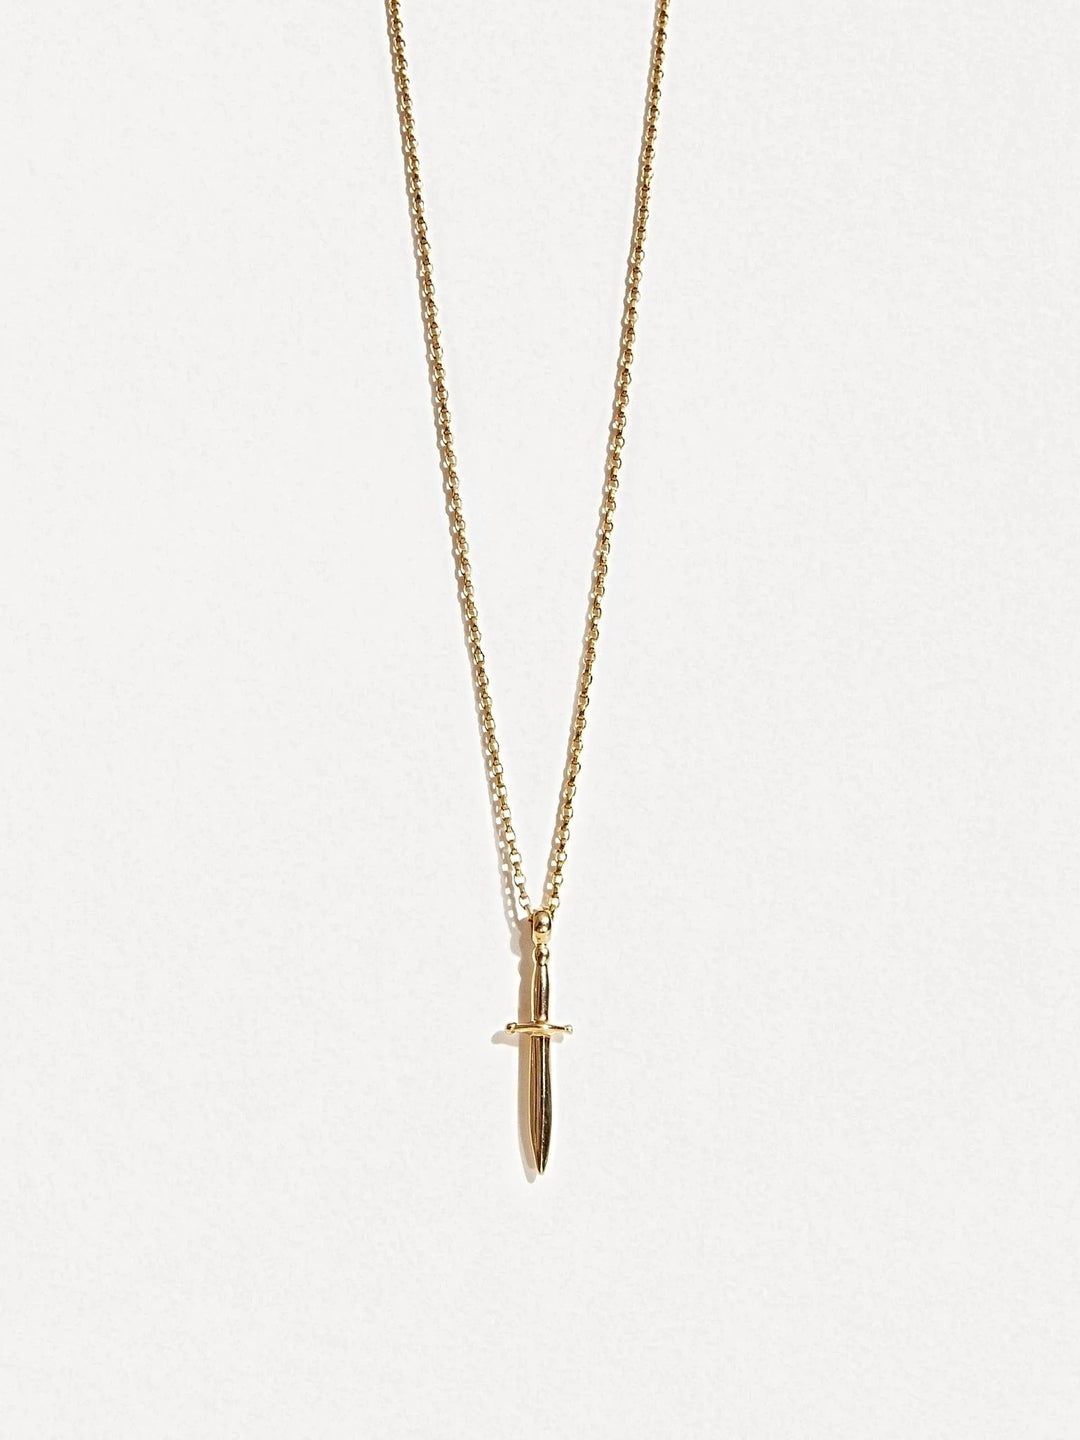 Polyana Dagger Necklace - 15.7St Silver ShinyankorBackUpItemsLunai Jewelry